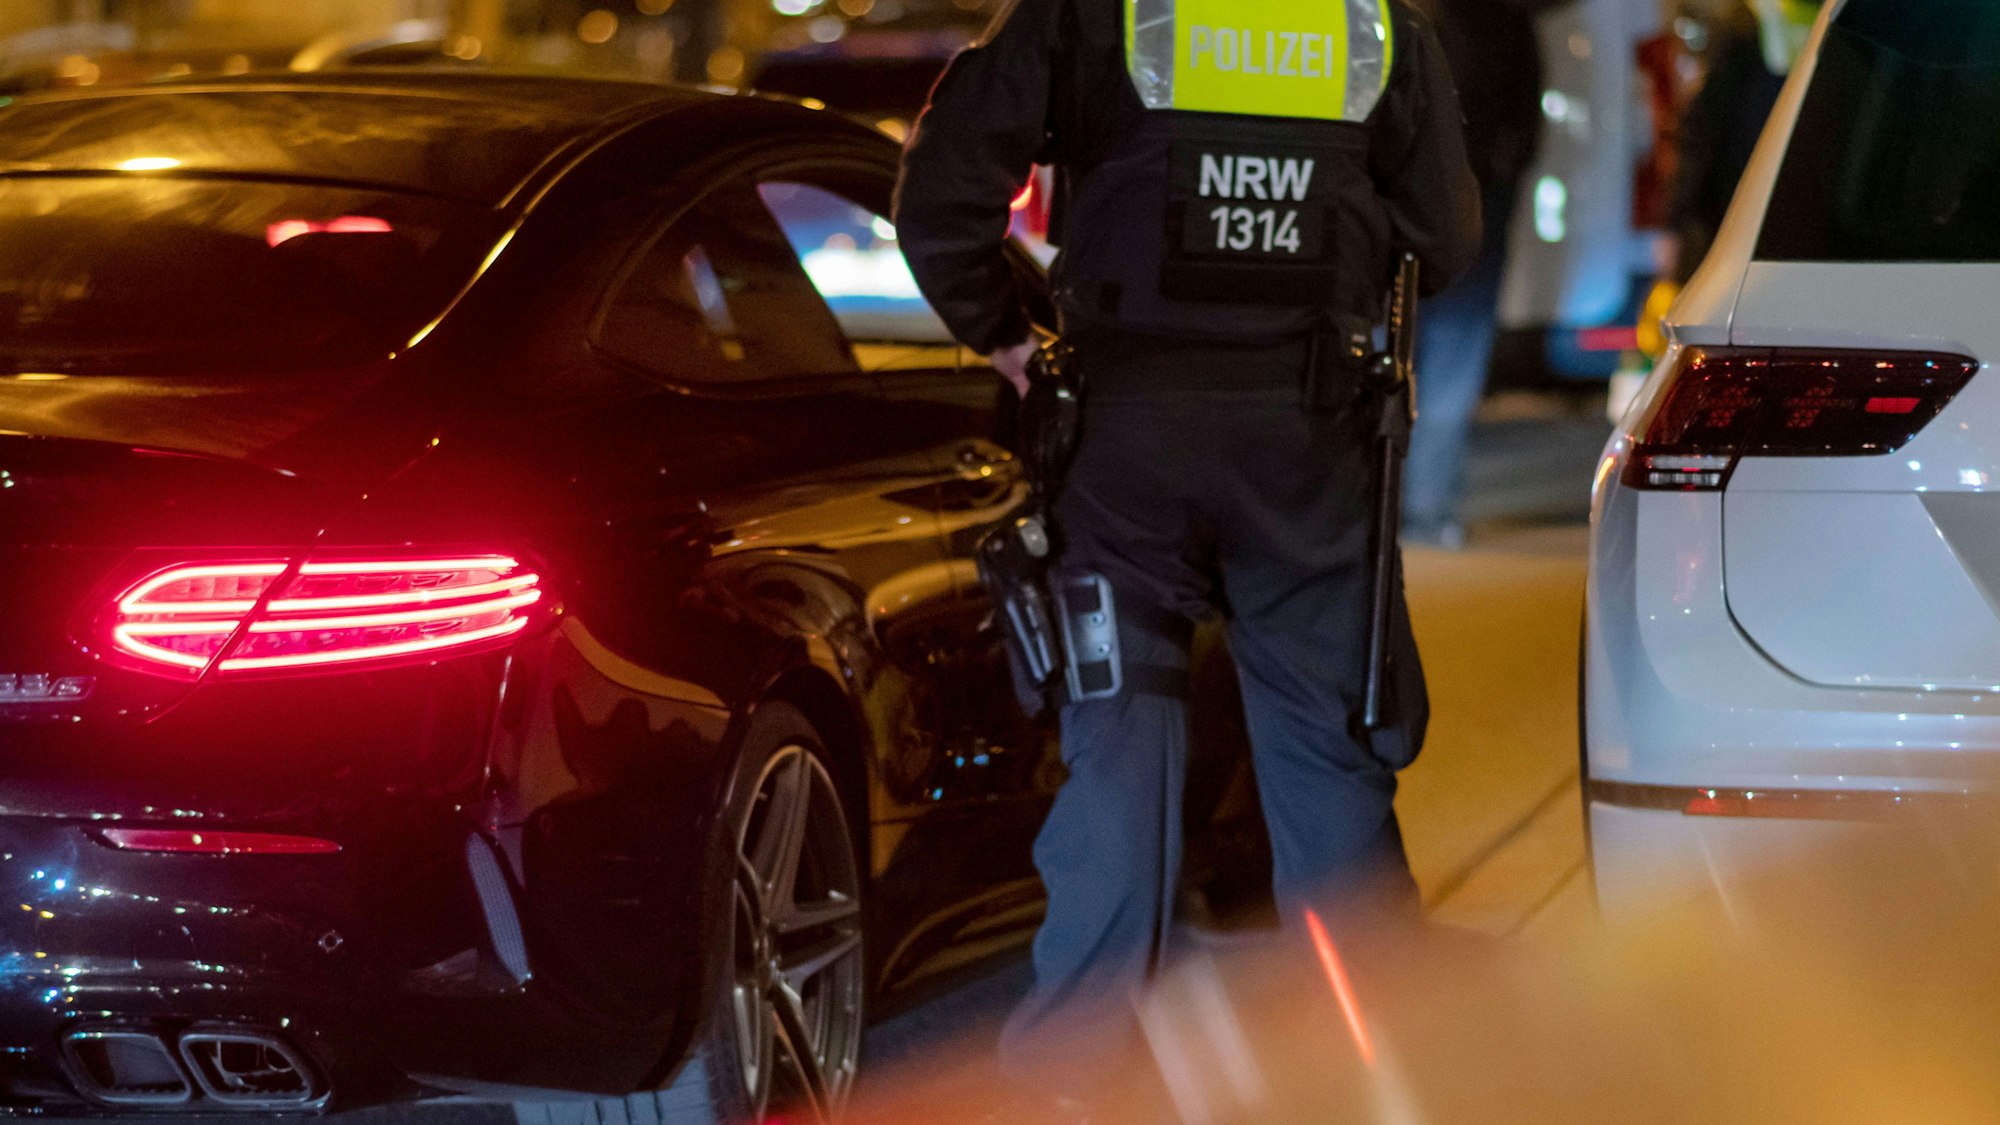 Einsatzkräfte der Polizei bei einer Fahrzeugkontrolle am 2. April 2021 in Dortmund. Vergangenen Freitag wurde ein gesuchter Verdächtiger bei einer Kontrolle auf der A64 festgenommen. Der Mann wurde seit 20 Jahren gesucht.